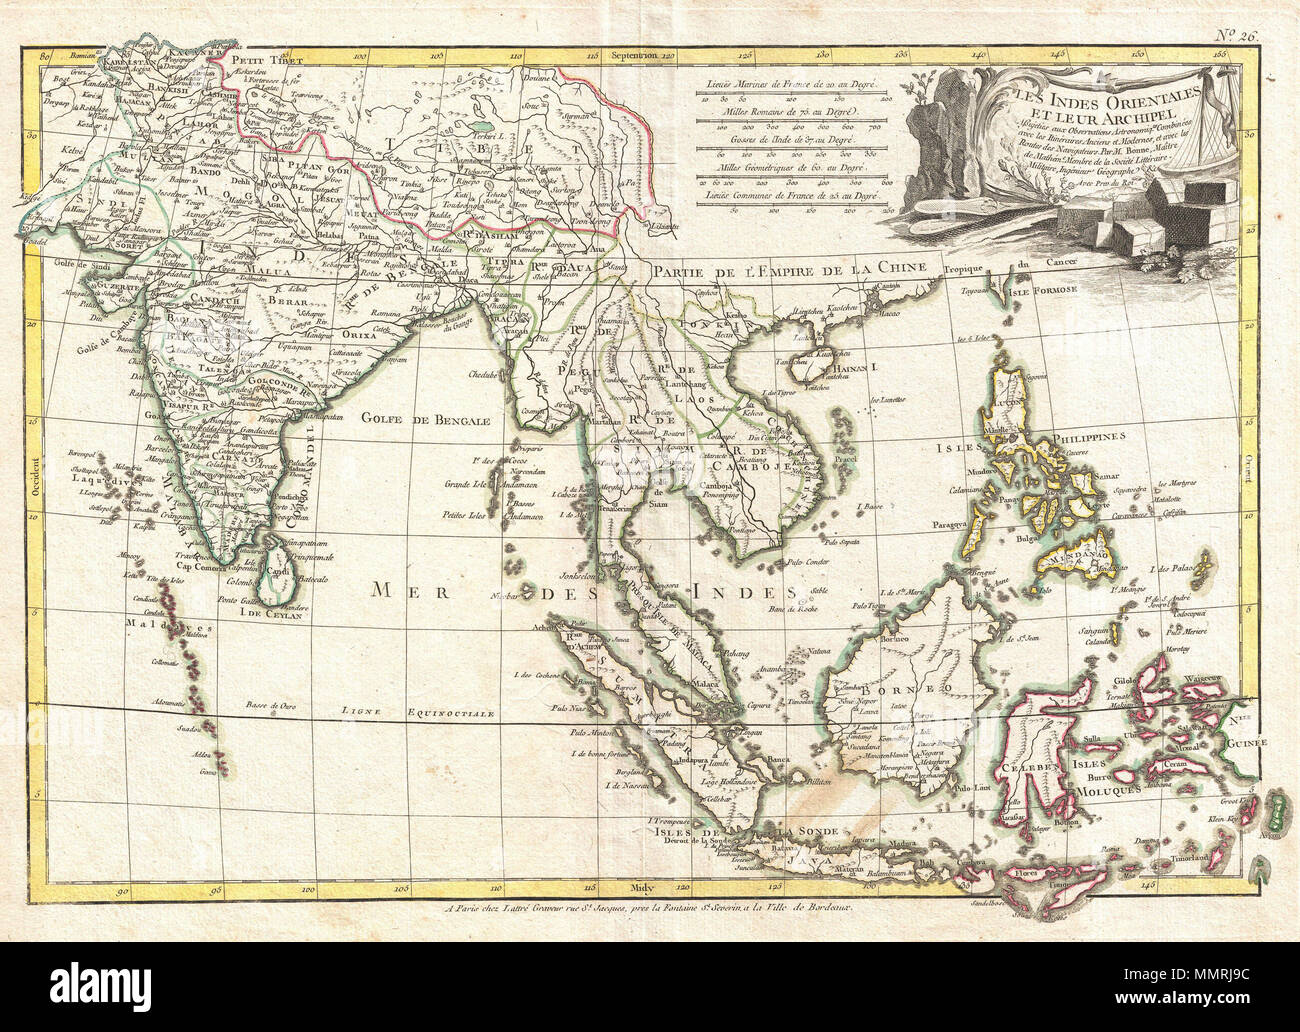 . Inglese: un bellissimo esempio di Rigobert Bonne's c. 1770 mappa dell'India, del sud-est asiatico e le Indie Orientali. Coperchi da Kandahar e le Maldive nell'ovest a est fino a includere tutti di India e Sud-est asiatico (moderno la Birmania, Tailandia o il Siam, Malaysia, Cambogia, Vietnam, Laos), le Indie Orientali (Java, Sumatra, Borneo e Celebes) e le Filippine. Include anche molto del Tibet. Identifica innumerevoli città, fiumi, corsi d'acqua, e membri in tutta la regione. Nomi la retta Singapore come peccato Capura. Il Vietnam è diviso in regni fo Tonkin e Chochinchine. Include la punta del formo Foto Stock